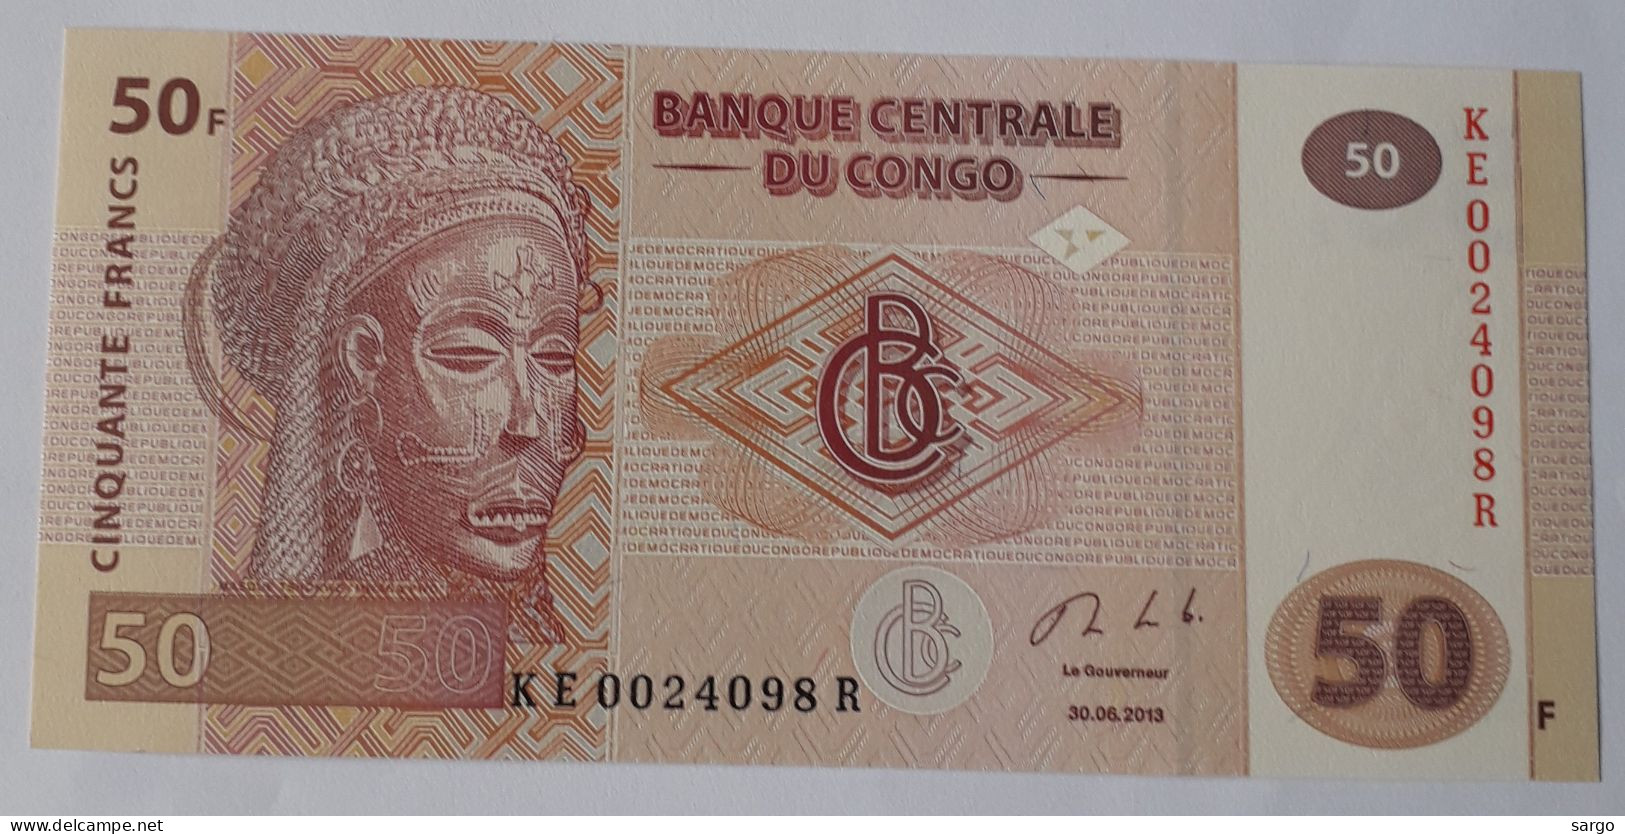 CONGO DEMOCRATIC REPUBLIC - 50 FRANCS  - P 97a  (2013) - UNC - BANKNOTES - PAPER MONEY - CARTAMONETA - - Repubblica Democratica Del Congo & Zaire